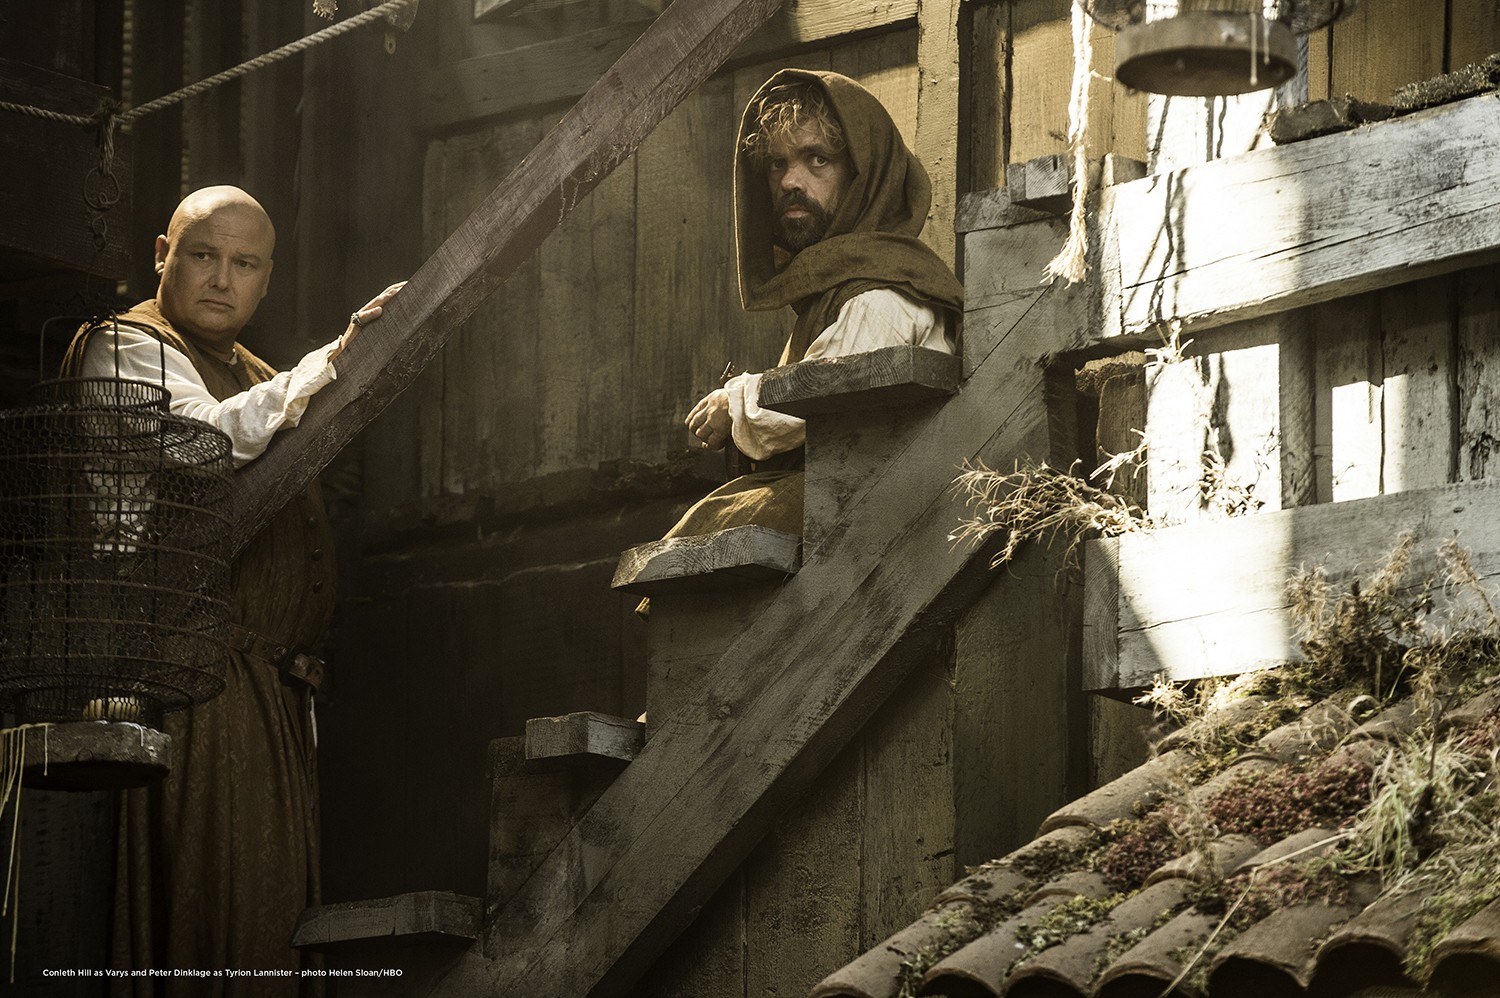 Novos atores de 'Game of Thrones' falam da 5ª temporada - Monet